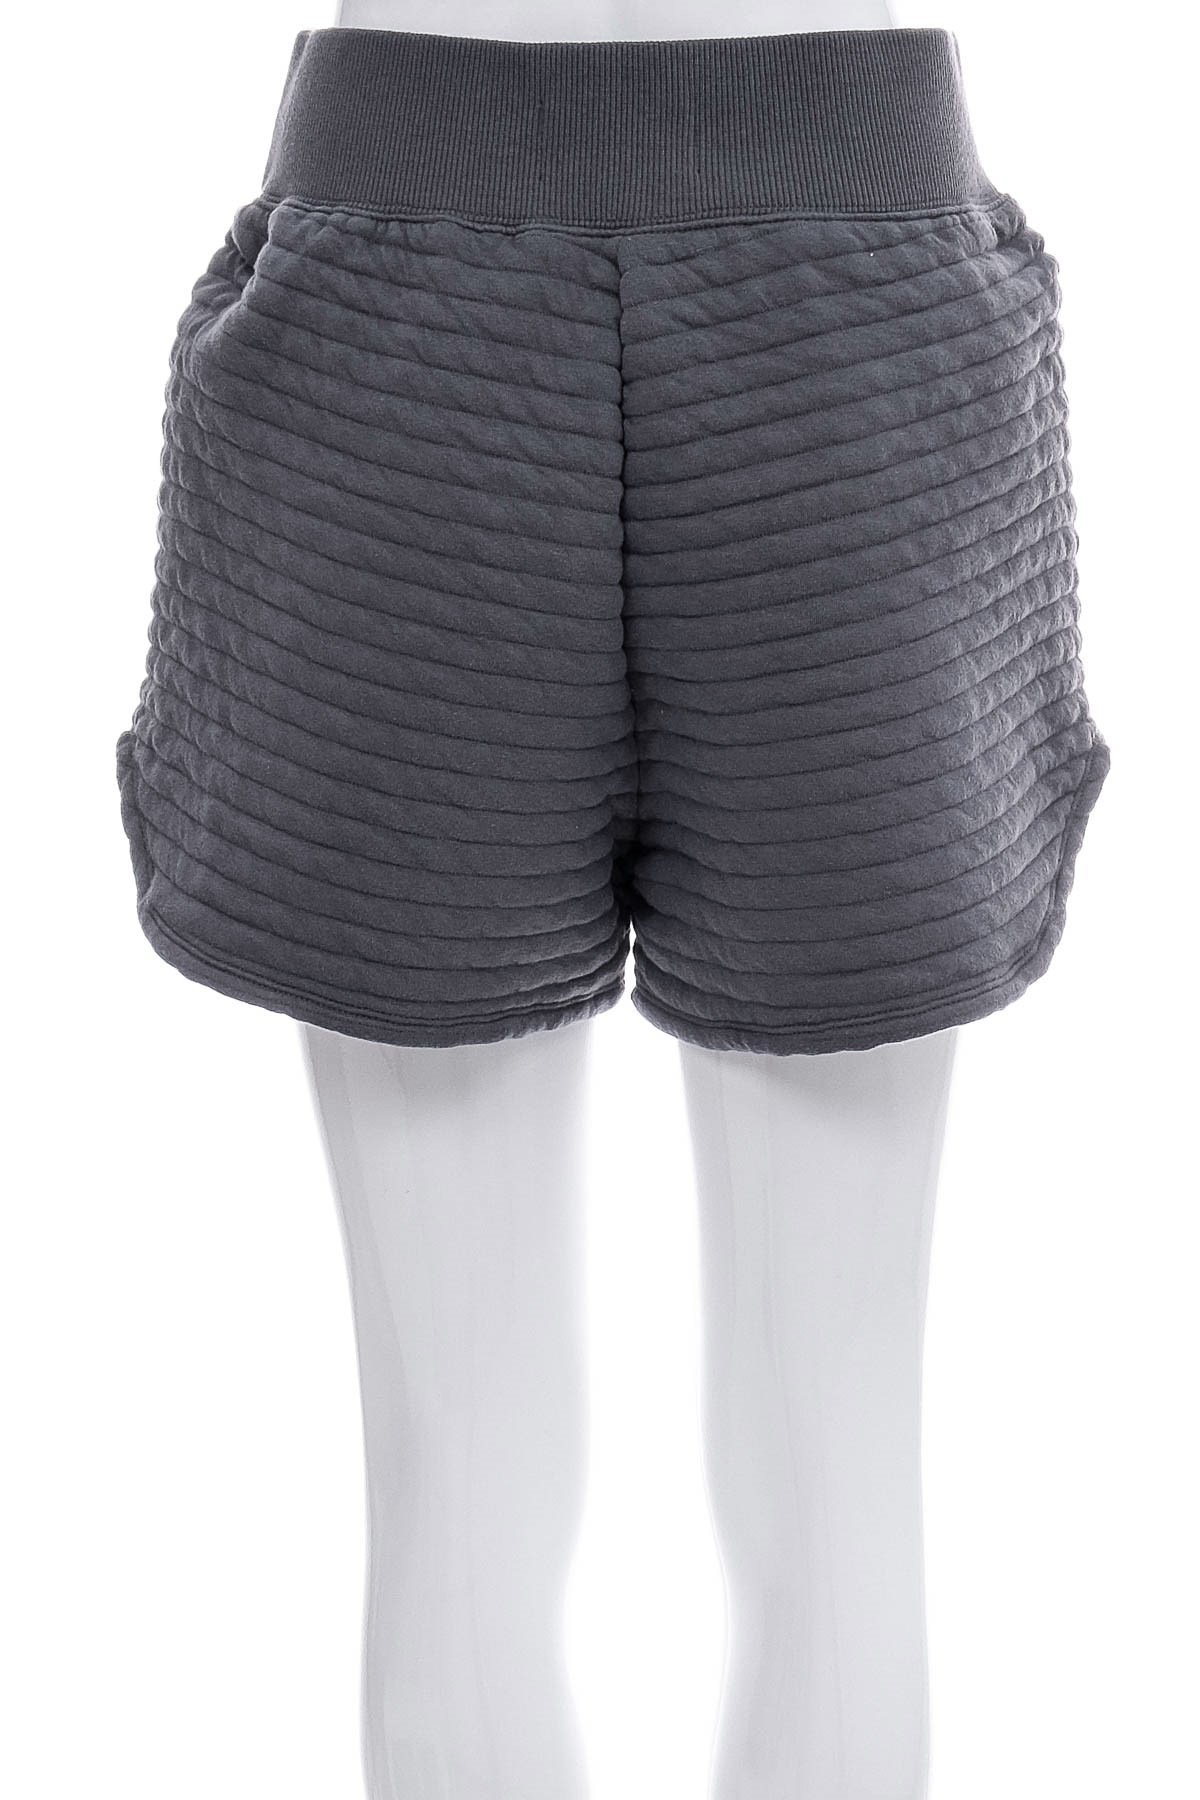 Female shorts - EVERLANE - 1